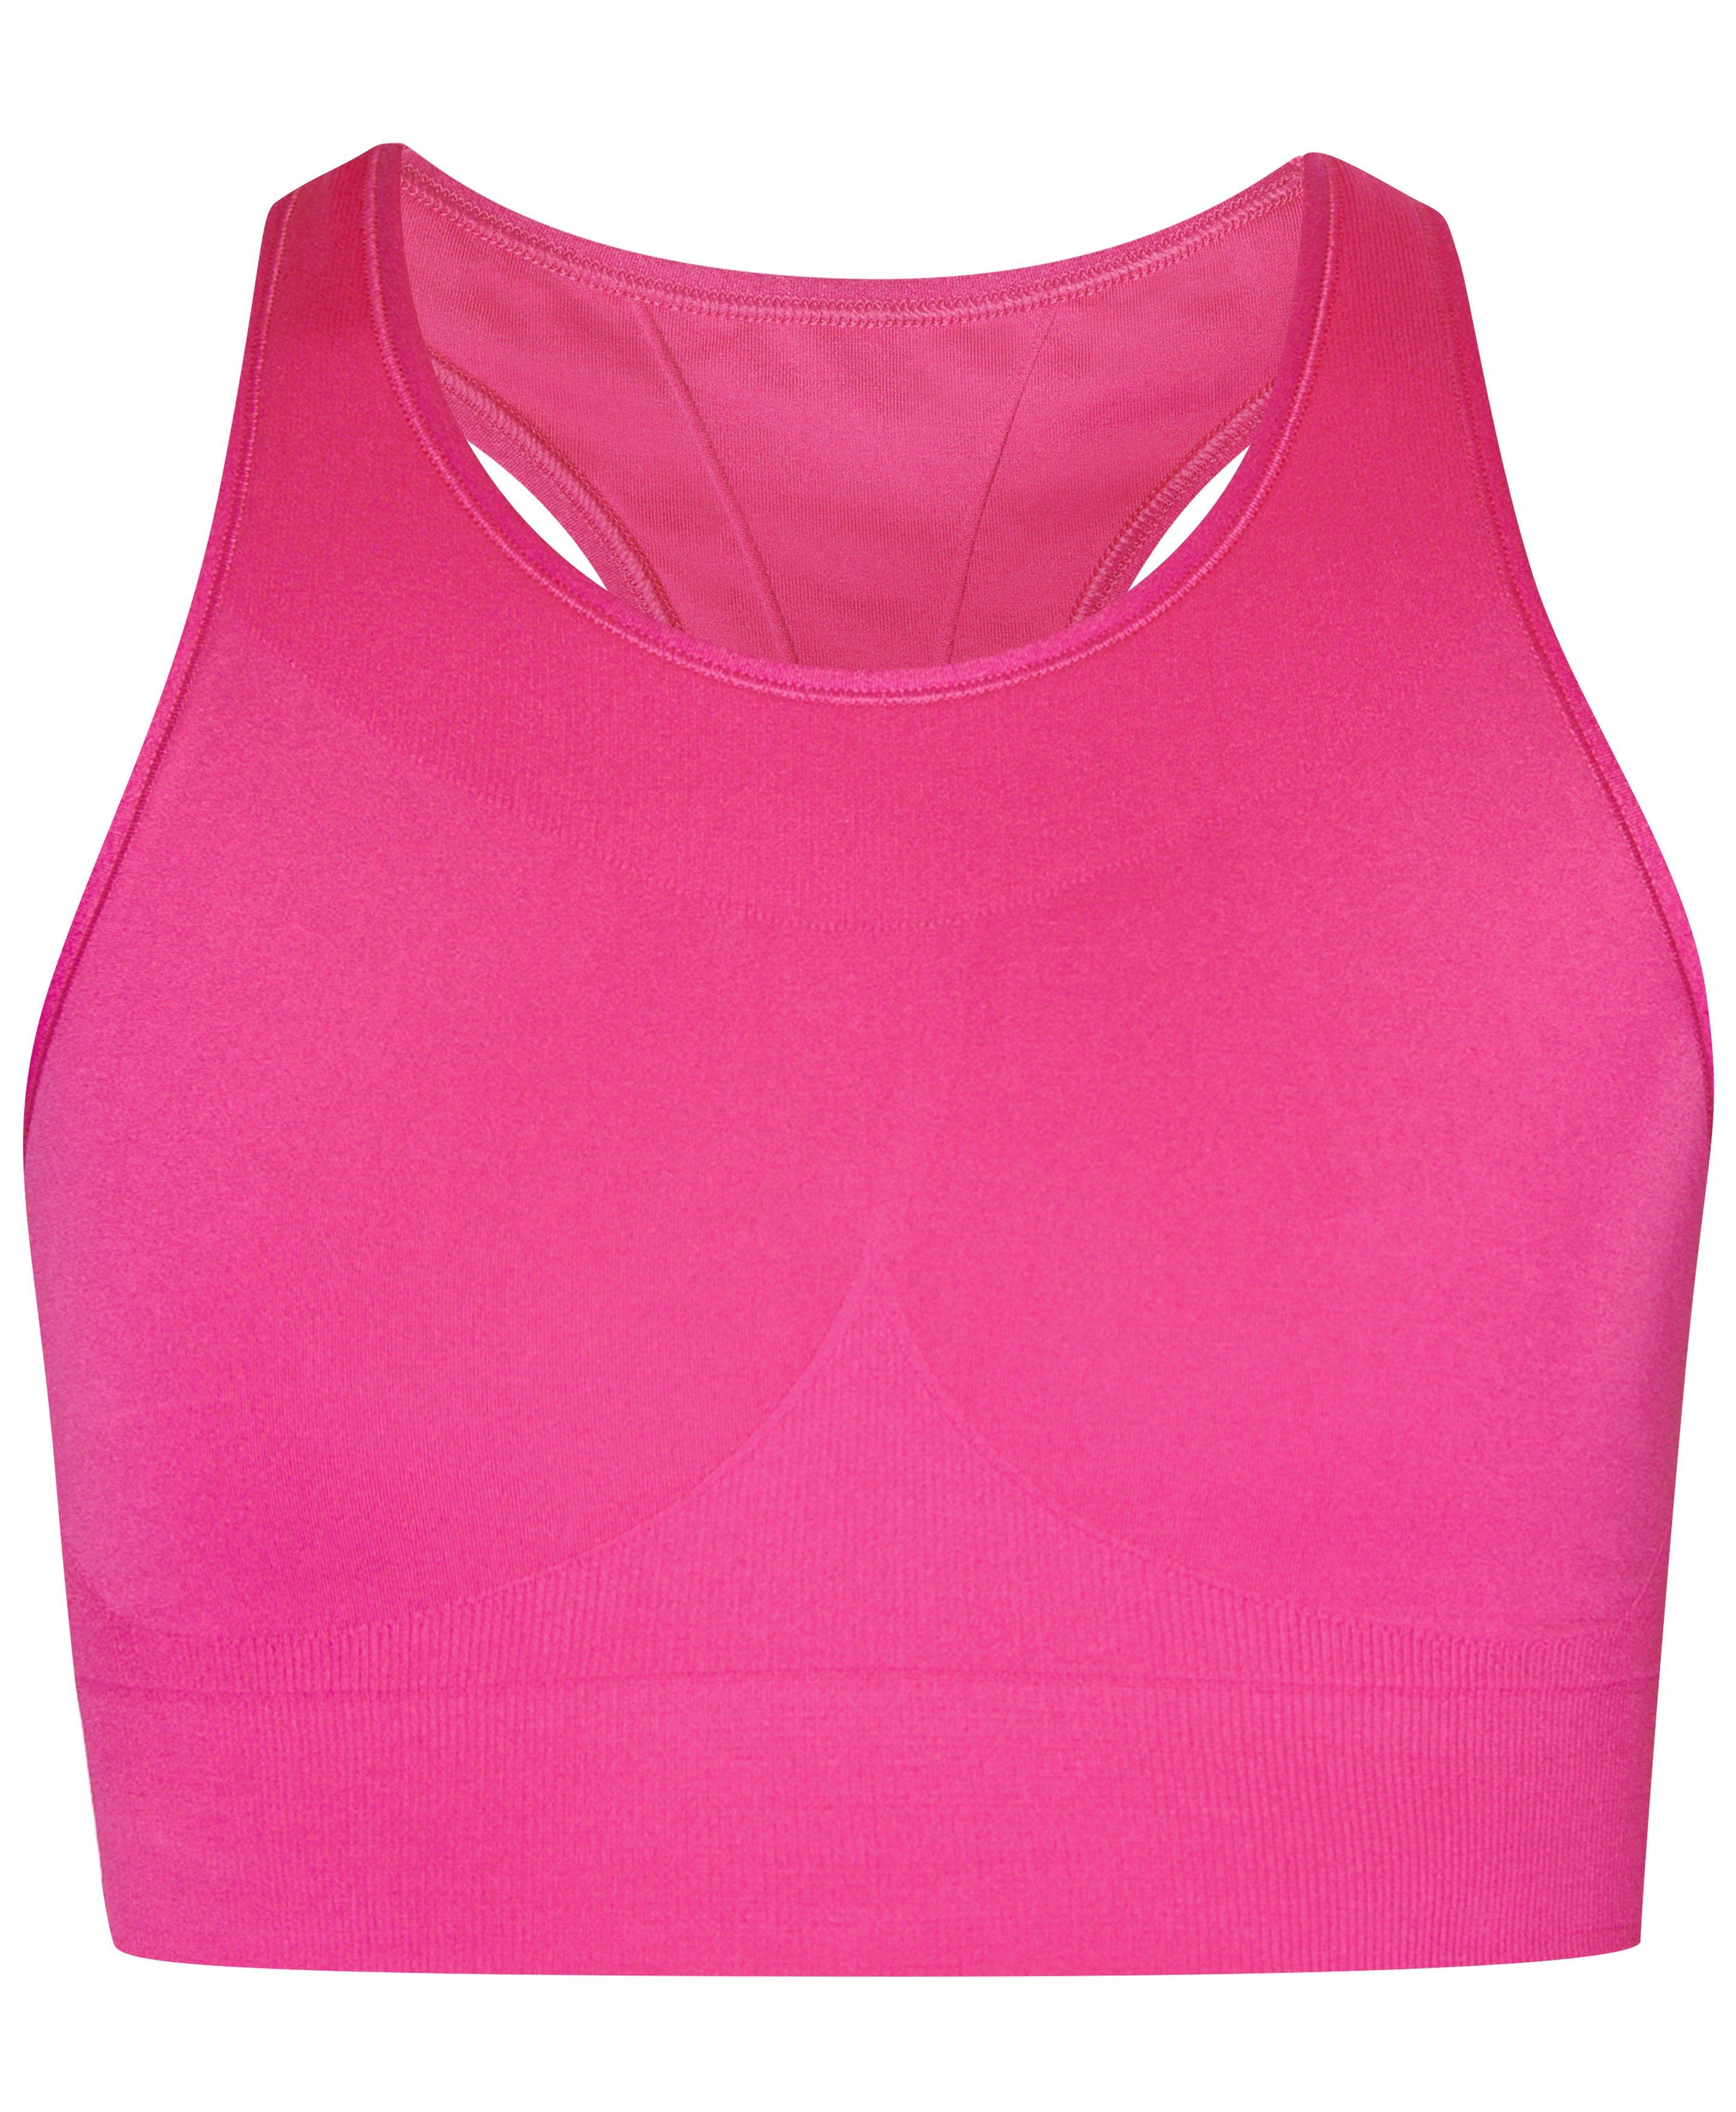 Stamina Sports Bra - Beet Pink, Women's Sports Bras